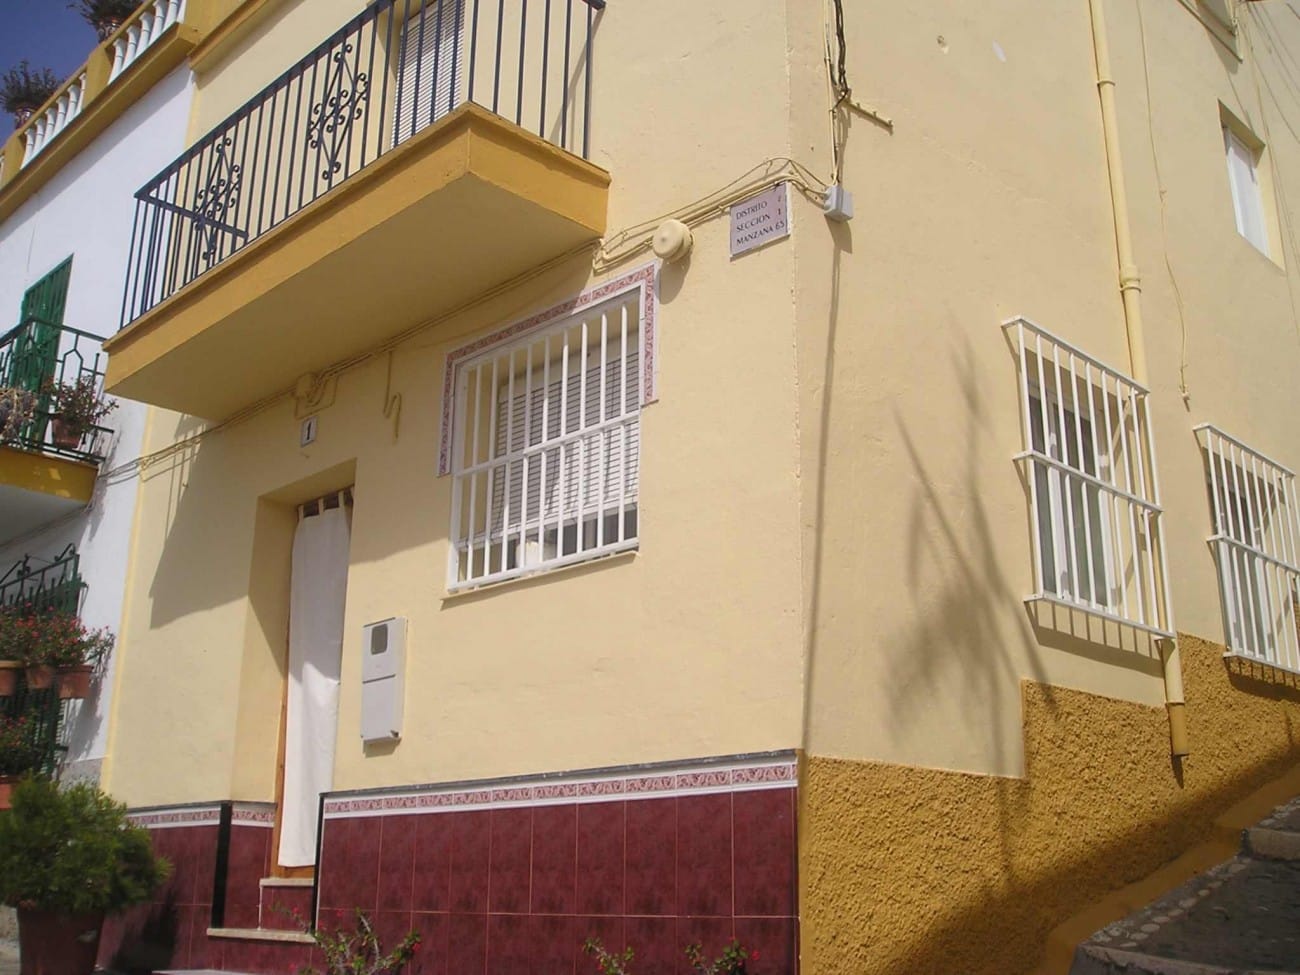 Vooraanzicht van resale huis in La Herradura (04649) in Spanje, gelegen aan de  Costa de Almería